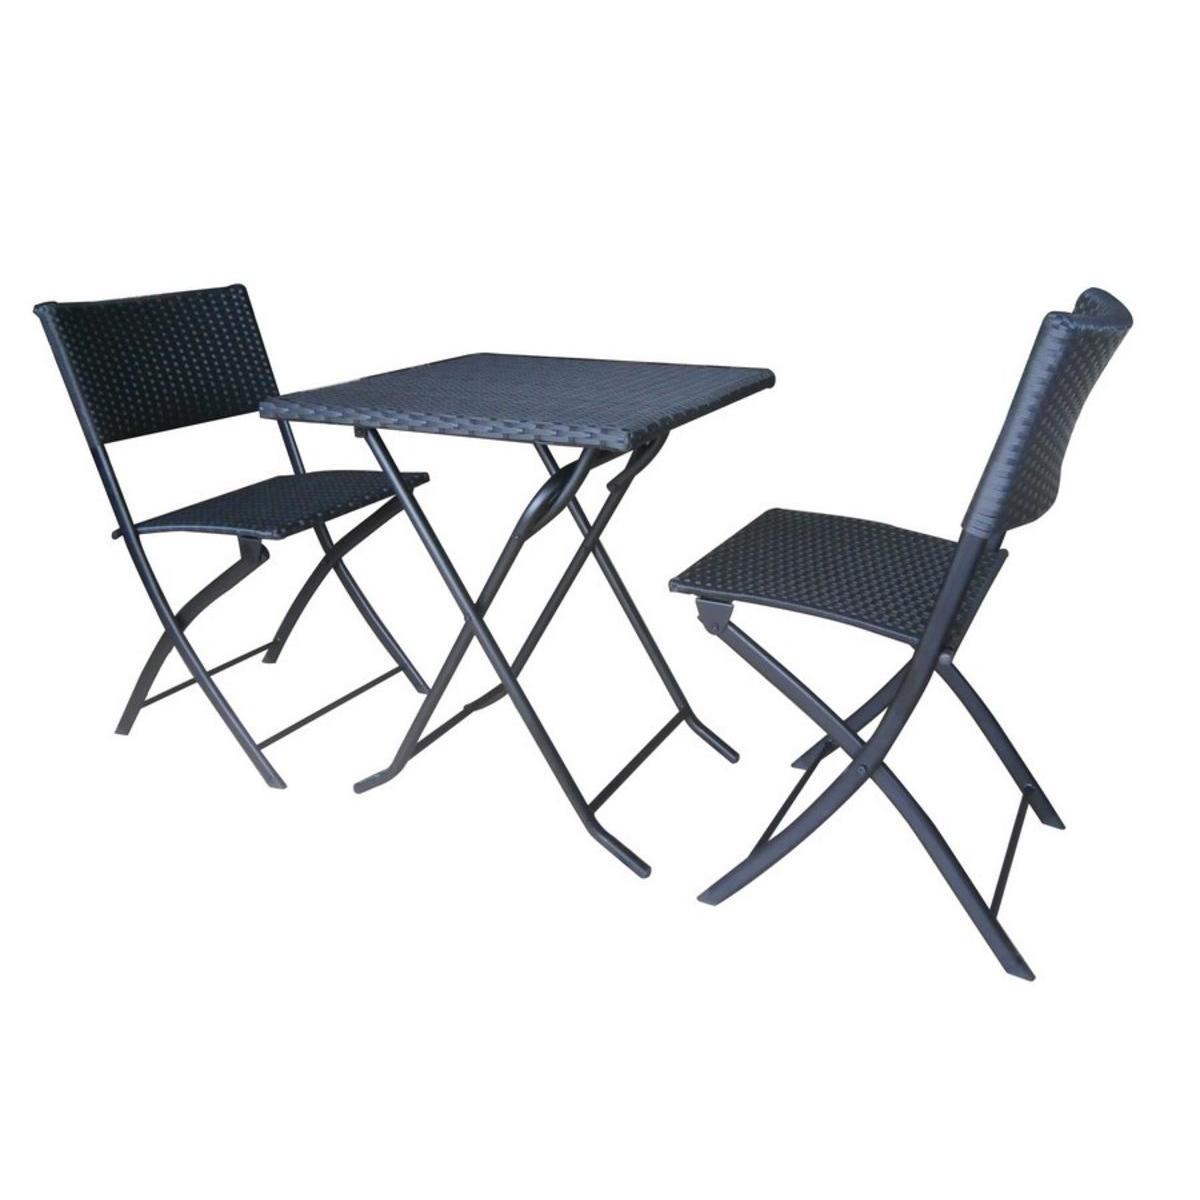 Ensemble table 60 x 60 x H71 cm + 2 chaises 55 x 45 x H 80 cm - Métal et résine - Noir